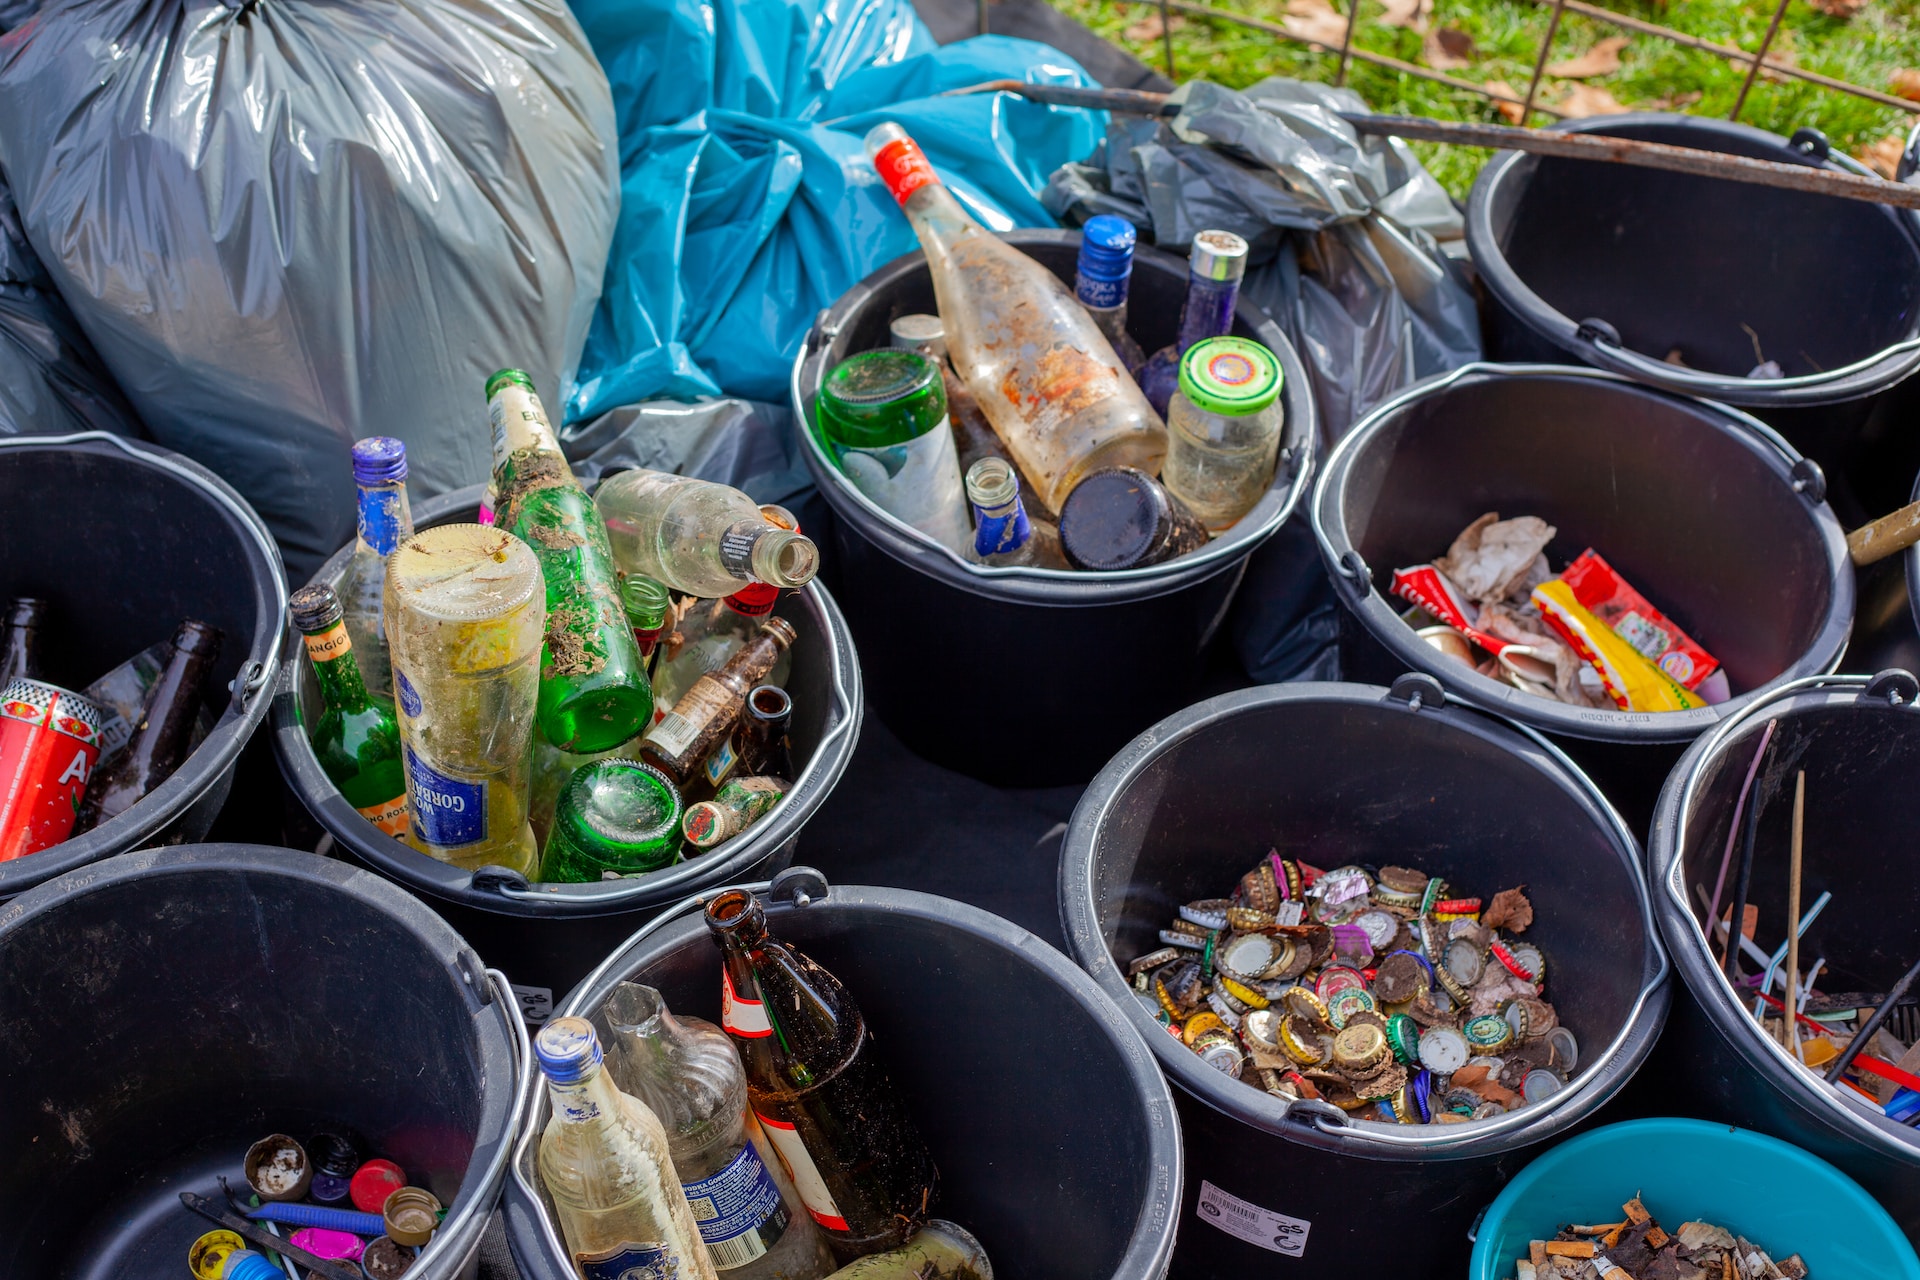 A partir de agosto 2023, los guatemaltecos deberán clasificar su basura en desechos de papel y cartón, vidrio, plástico, metal, multicapa, y otros. (Foto Prensa Libre: Jas Min en Unsplash).